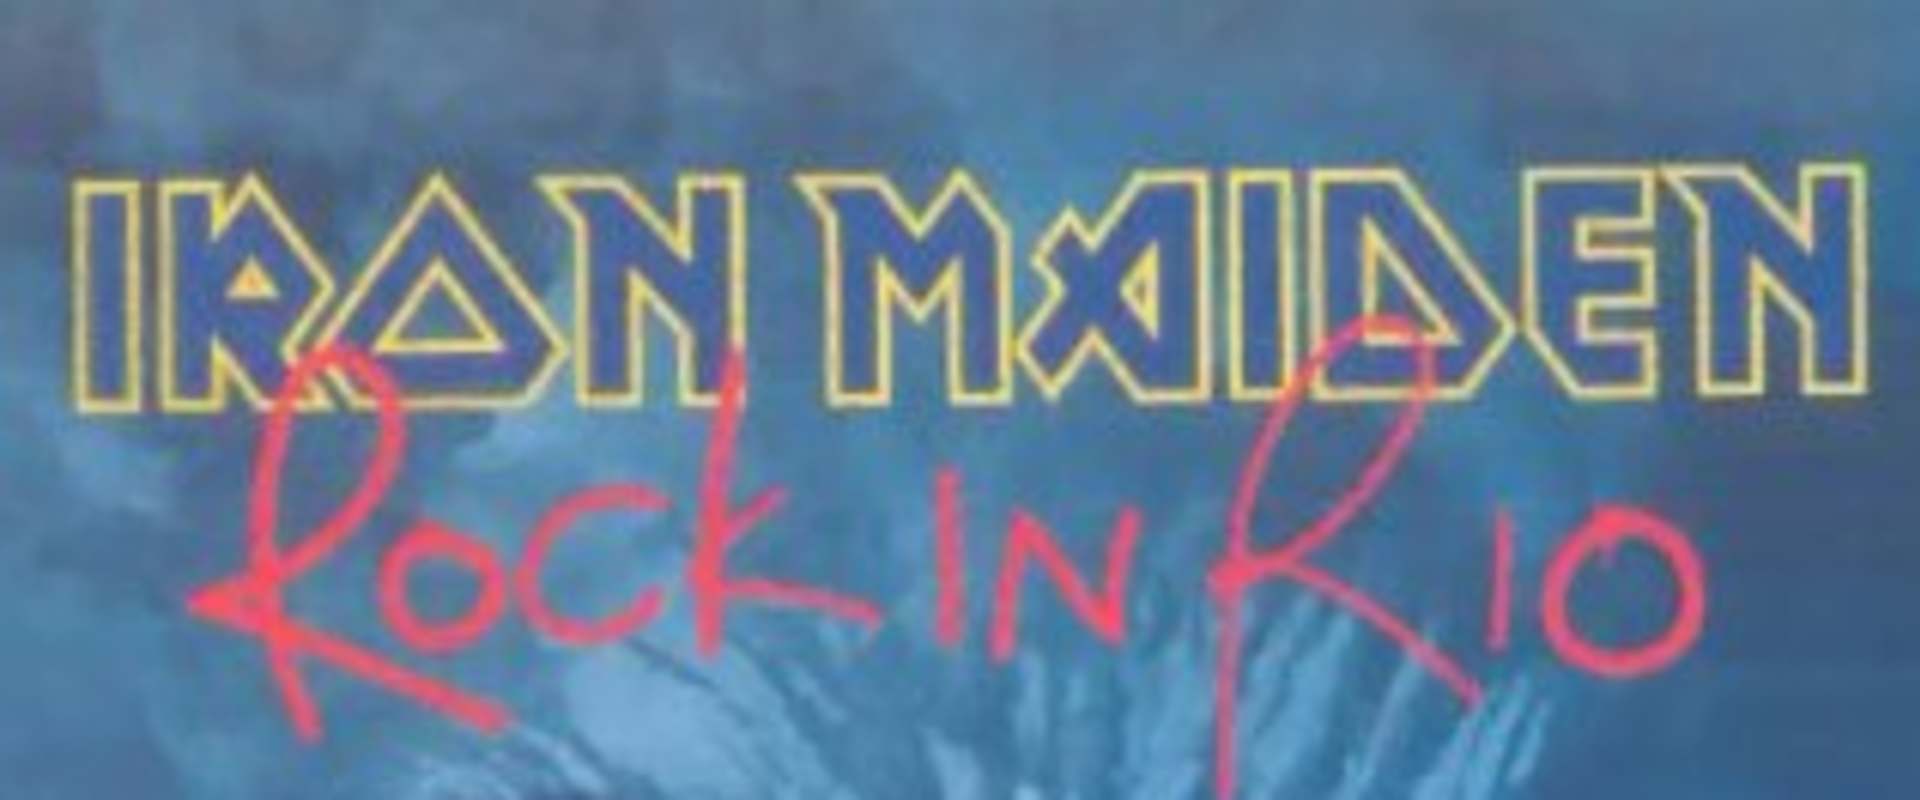 Iron Maiden: Rock In Rio 2001 background 2